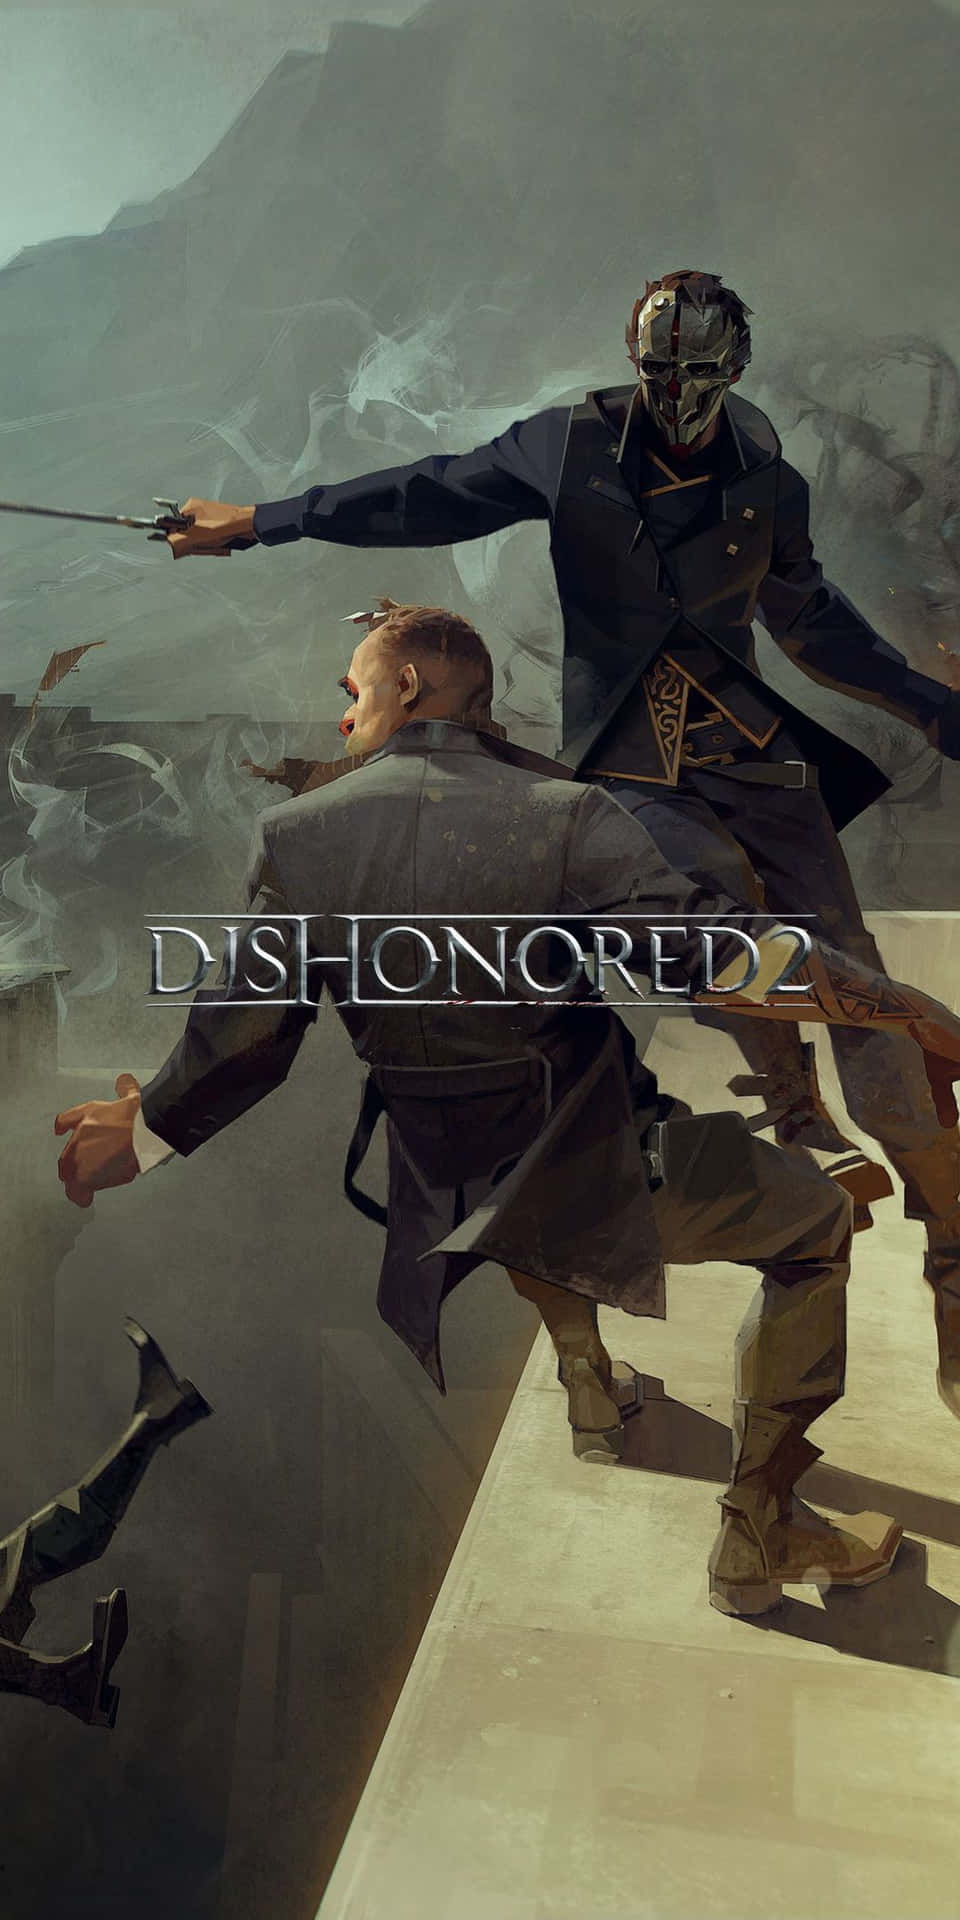 Portail Mondo Di Dishonored 2 In Vita Con Google Pixel 3